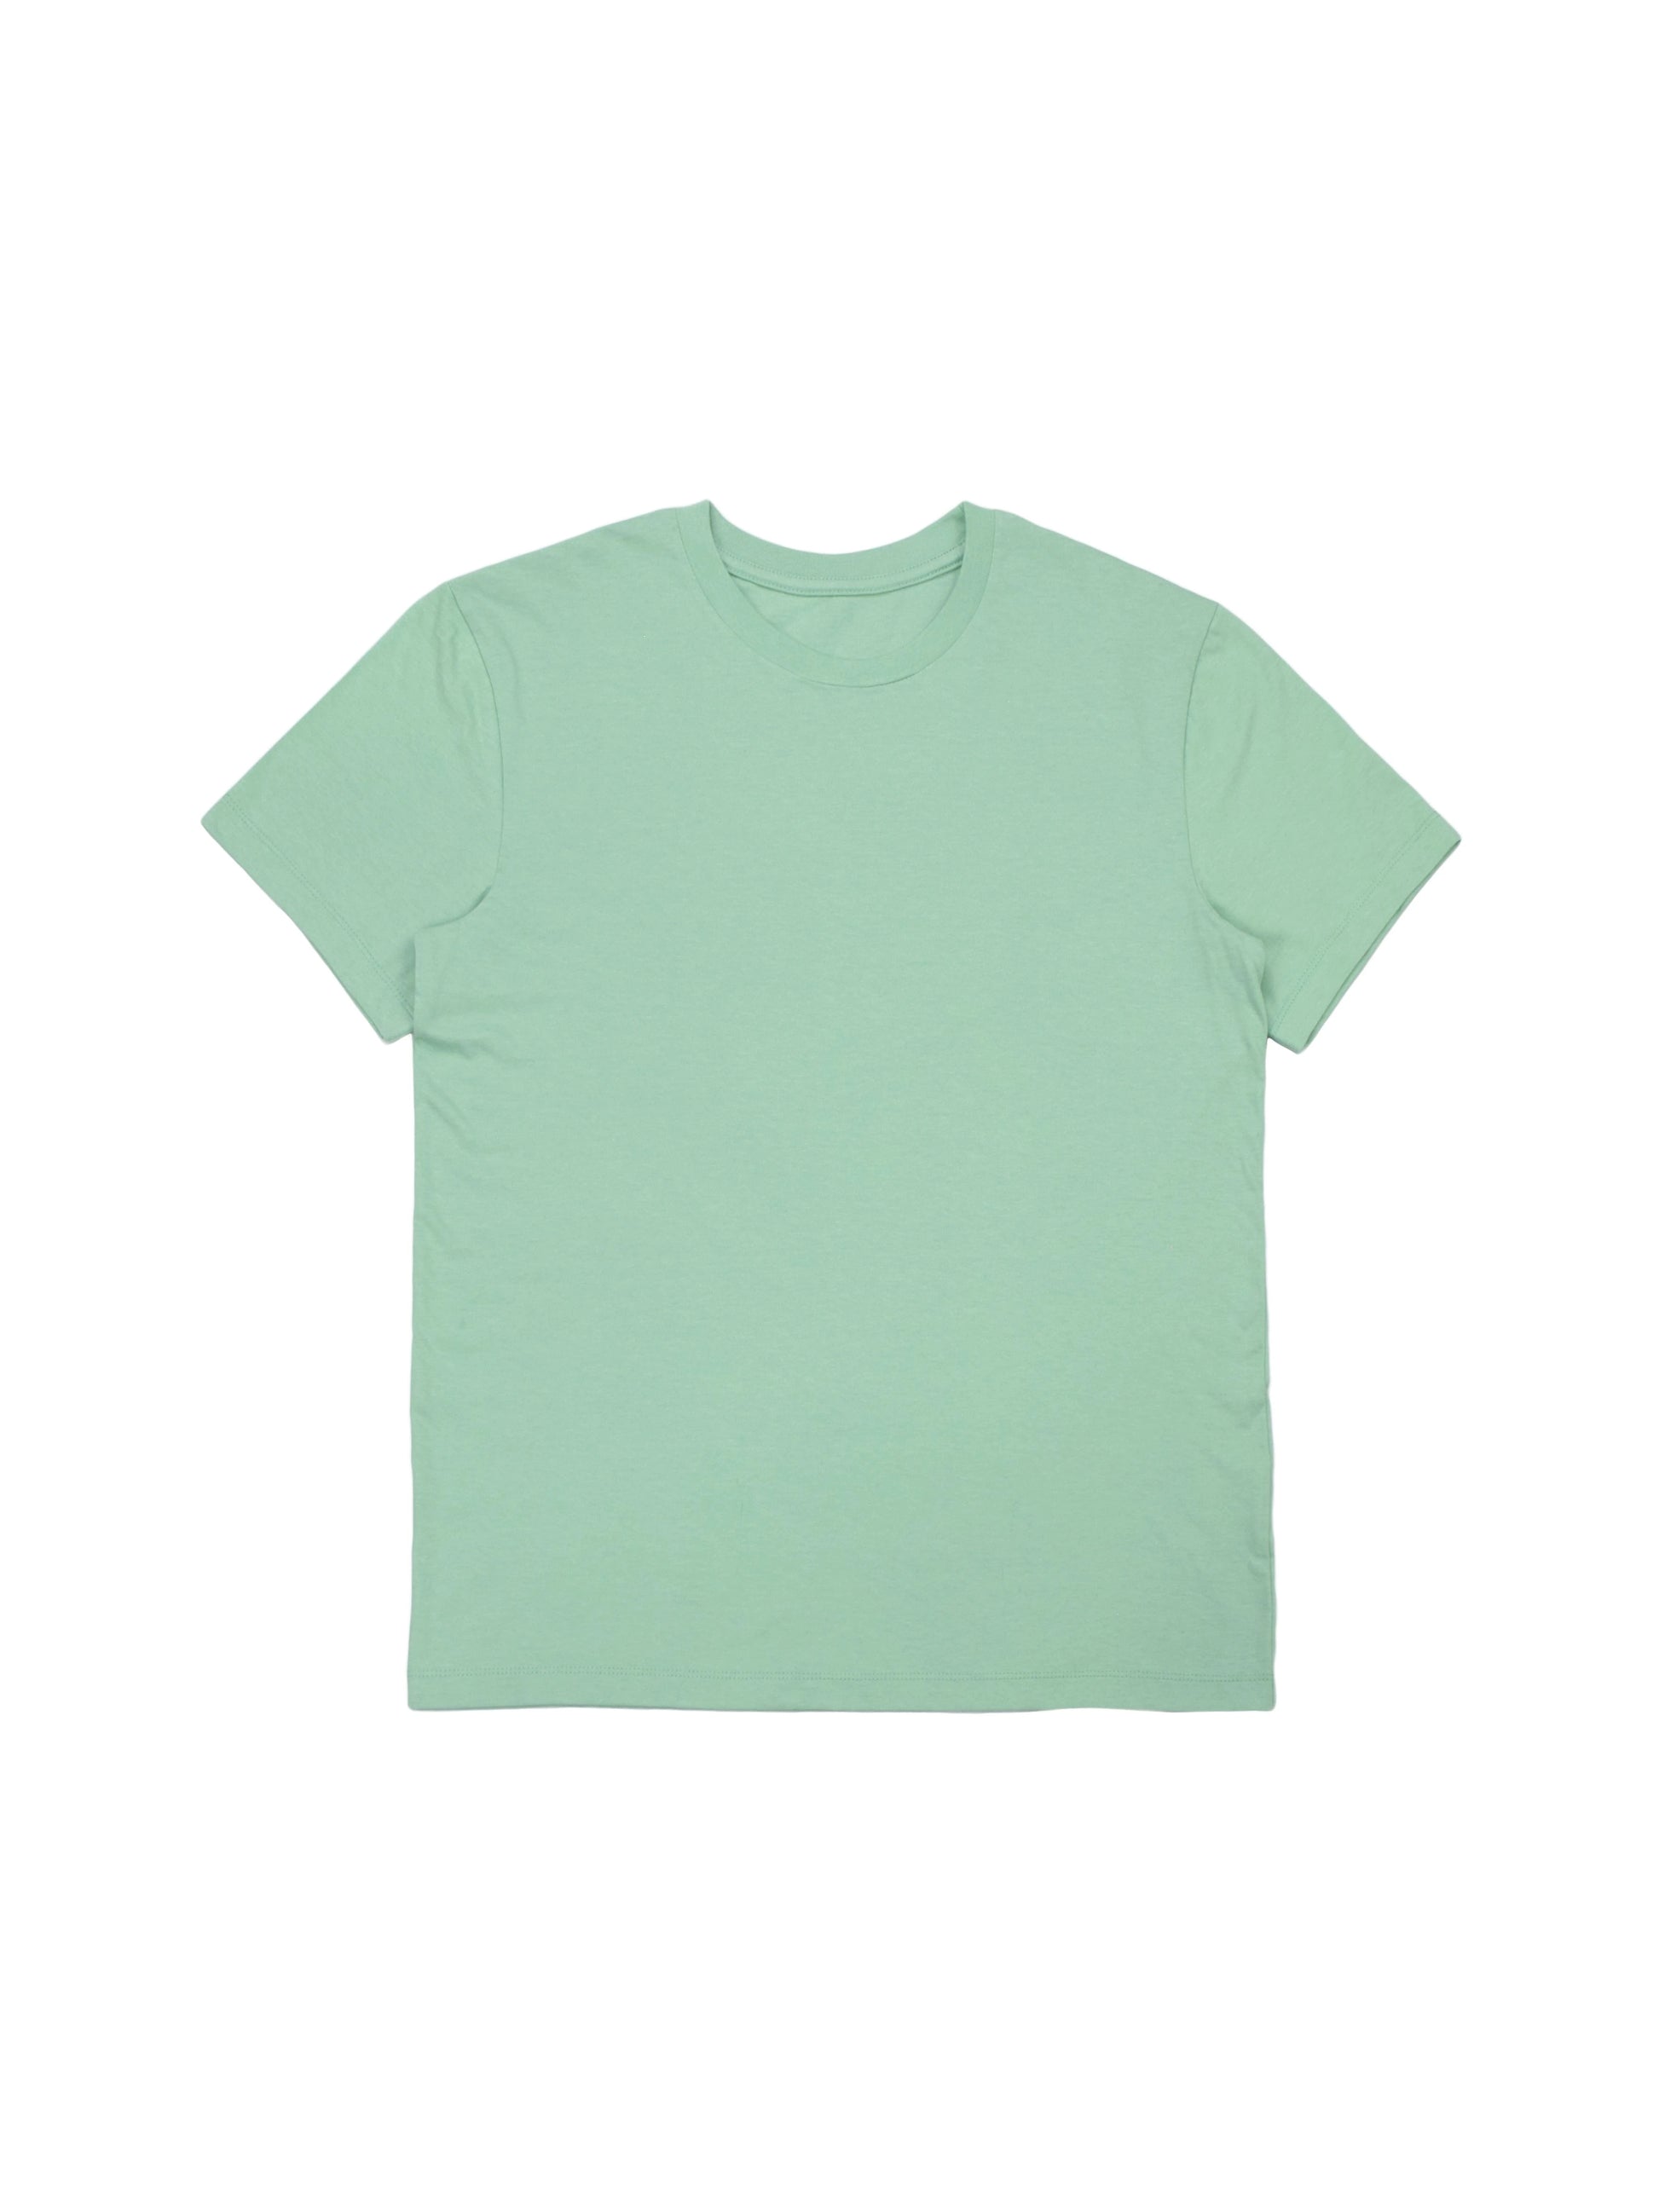 ESSENTIAL OVERSIZED T-SHIRT  Men's t-shirt, blank t-shirt - OFF